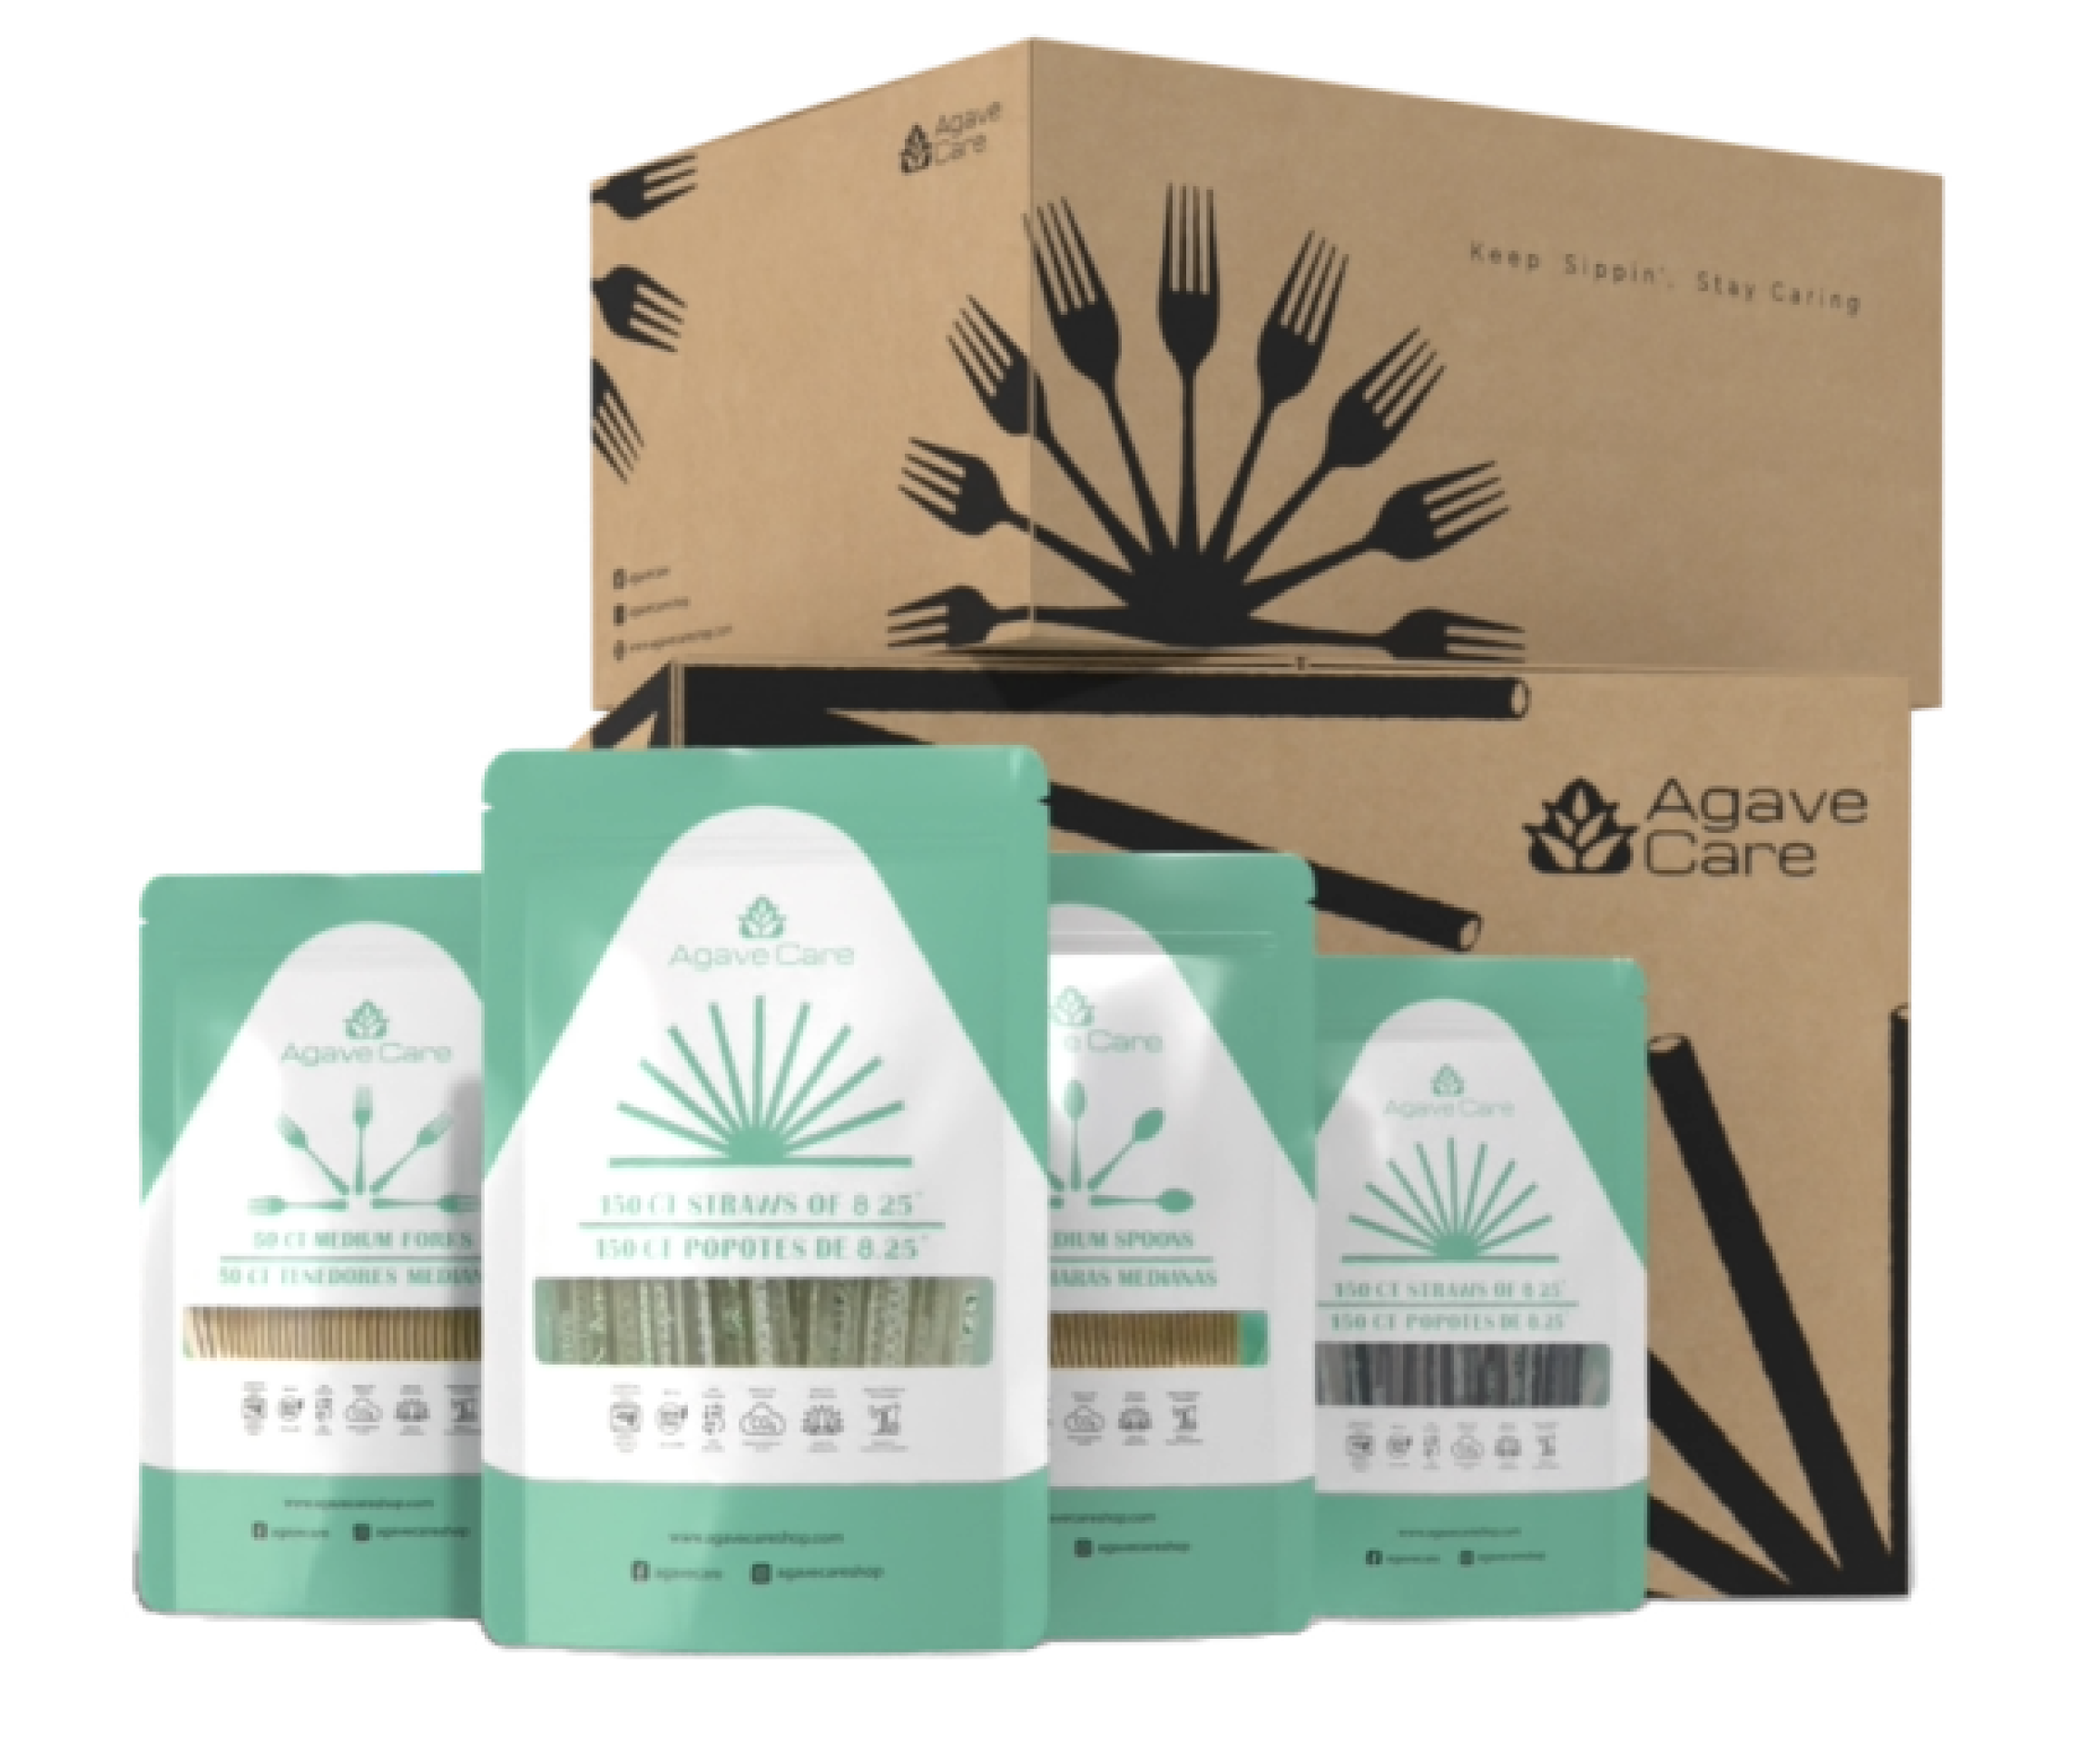 Agave Care | Agave Care | Agave care agave based products